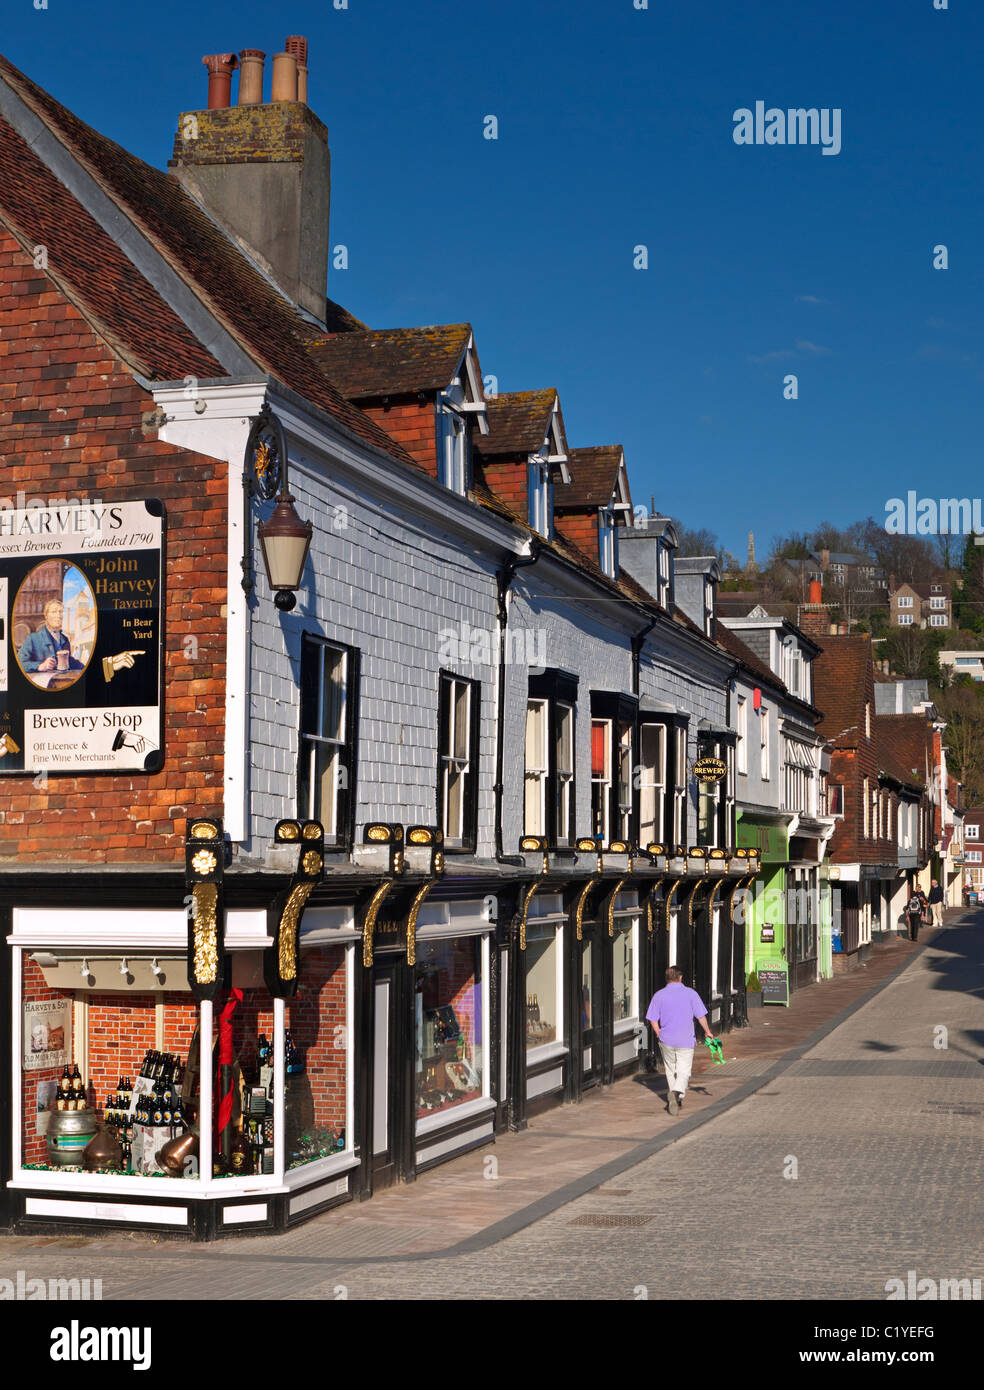 Magasins dans le tranquille quartier piétonnier et Harveys brasserie historique de Lewes inférieur boutique East Sussex UK Banque D'Images